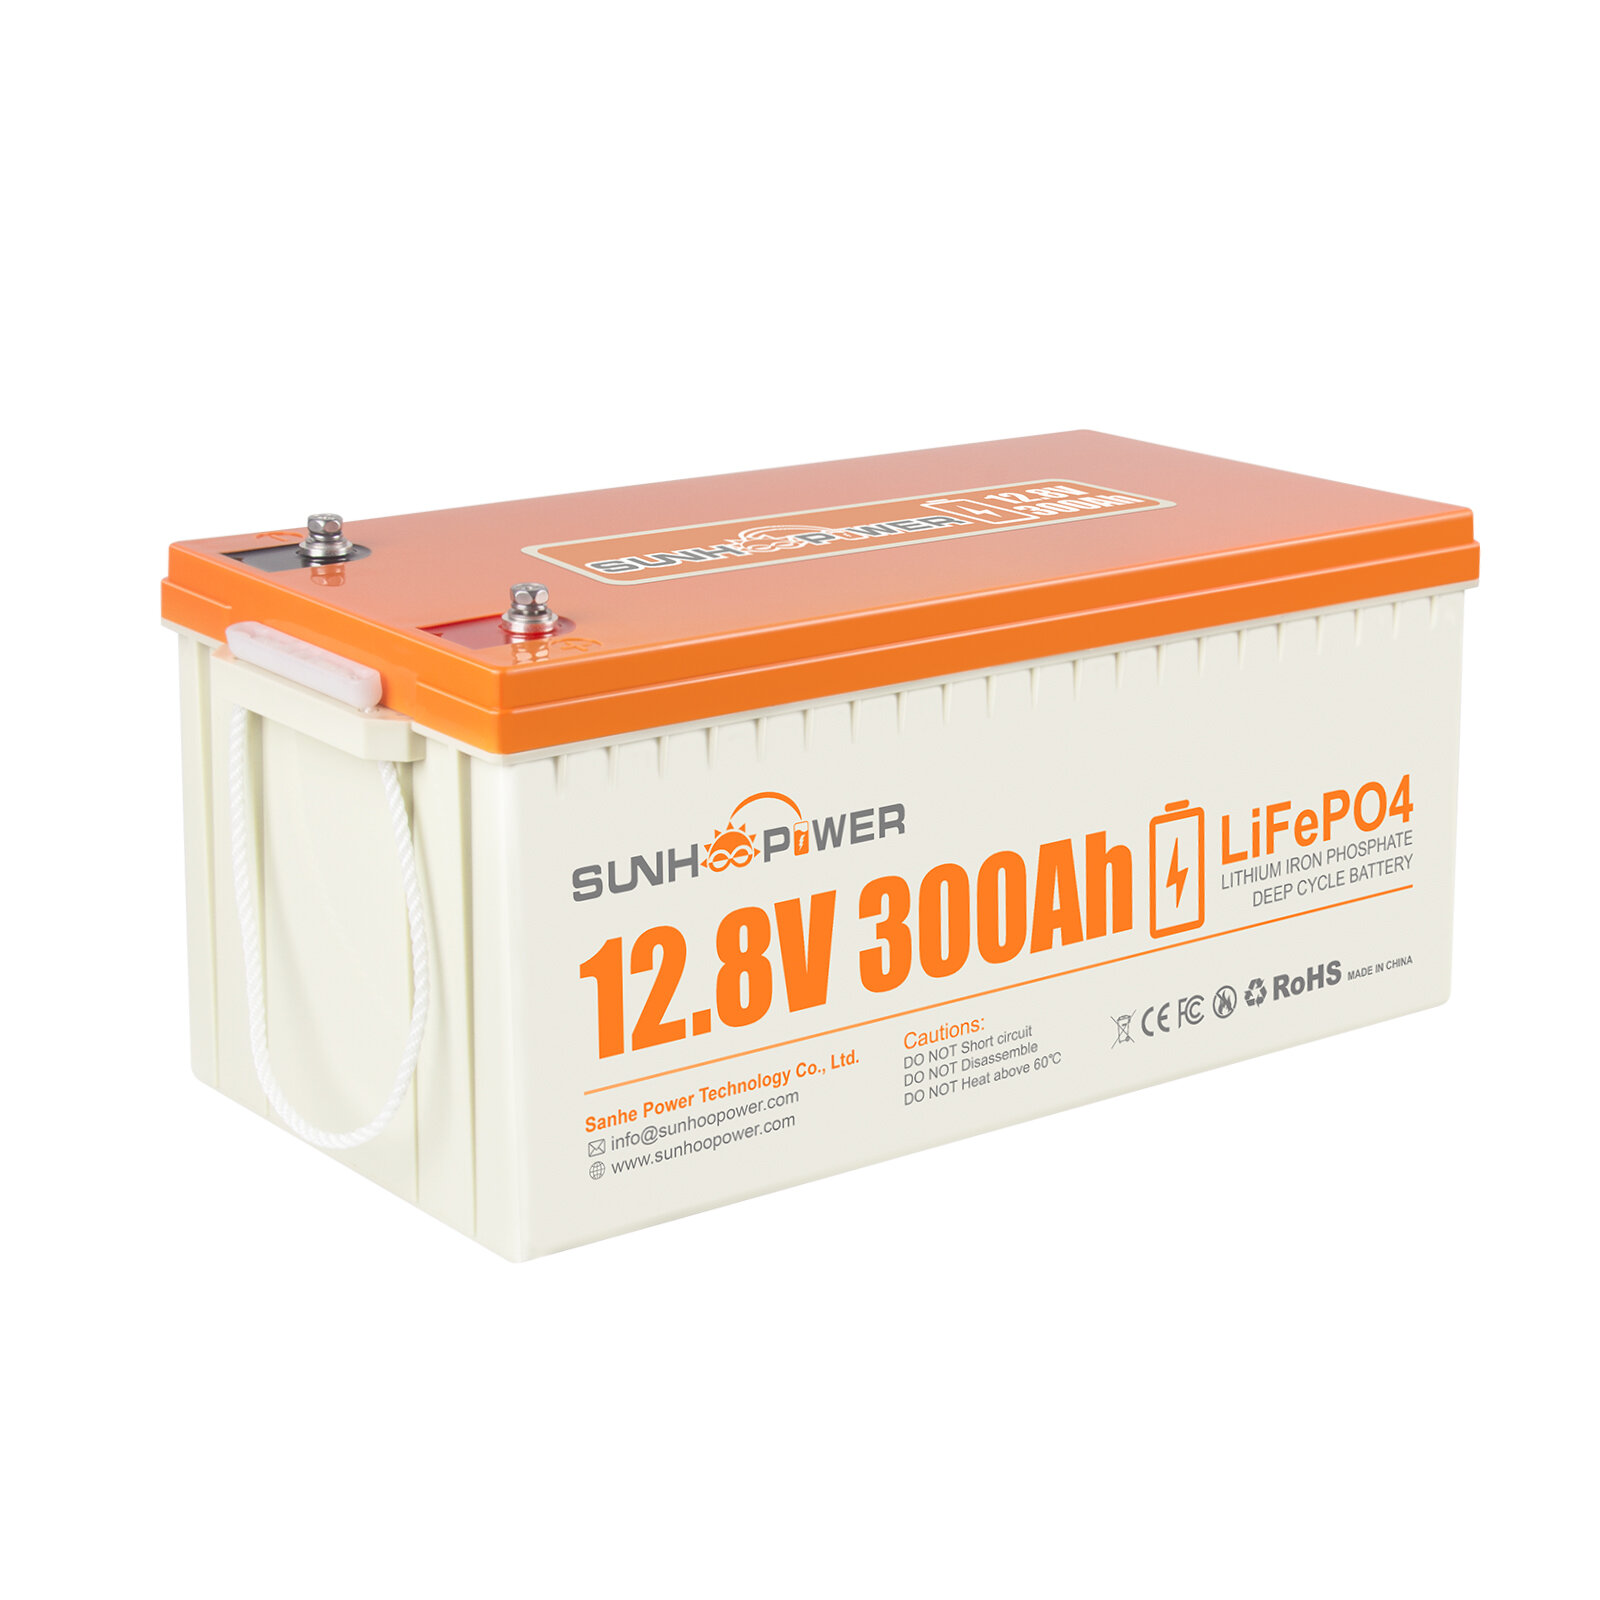 [EU Direct] Batterie au lithium rechargeable SUNHOOPOWER 12 V 300 AH LiFePO4, 2560Wh Batterie lithium pour RV, Marine, stockage d'énergie, alimentation de secours hors réseau